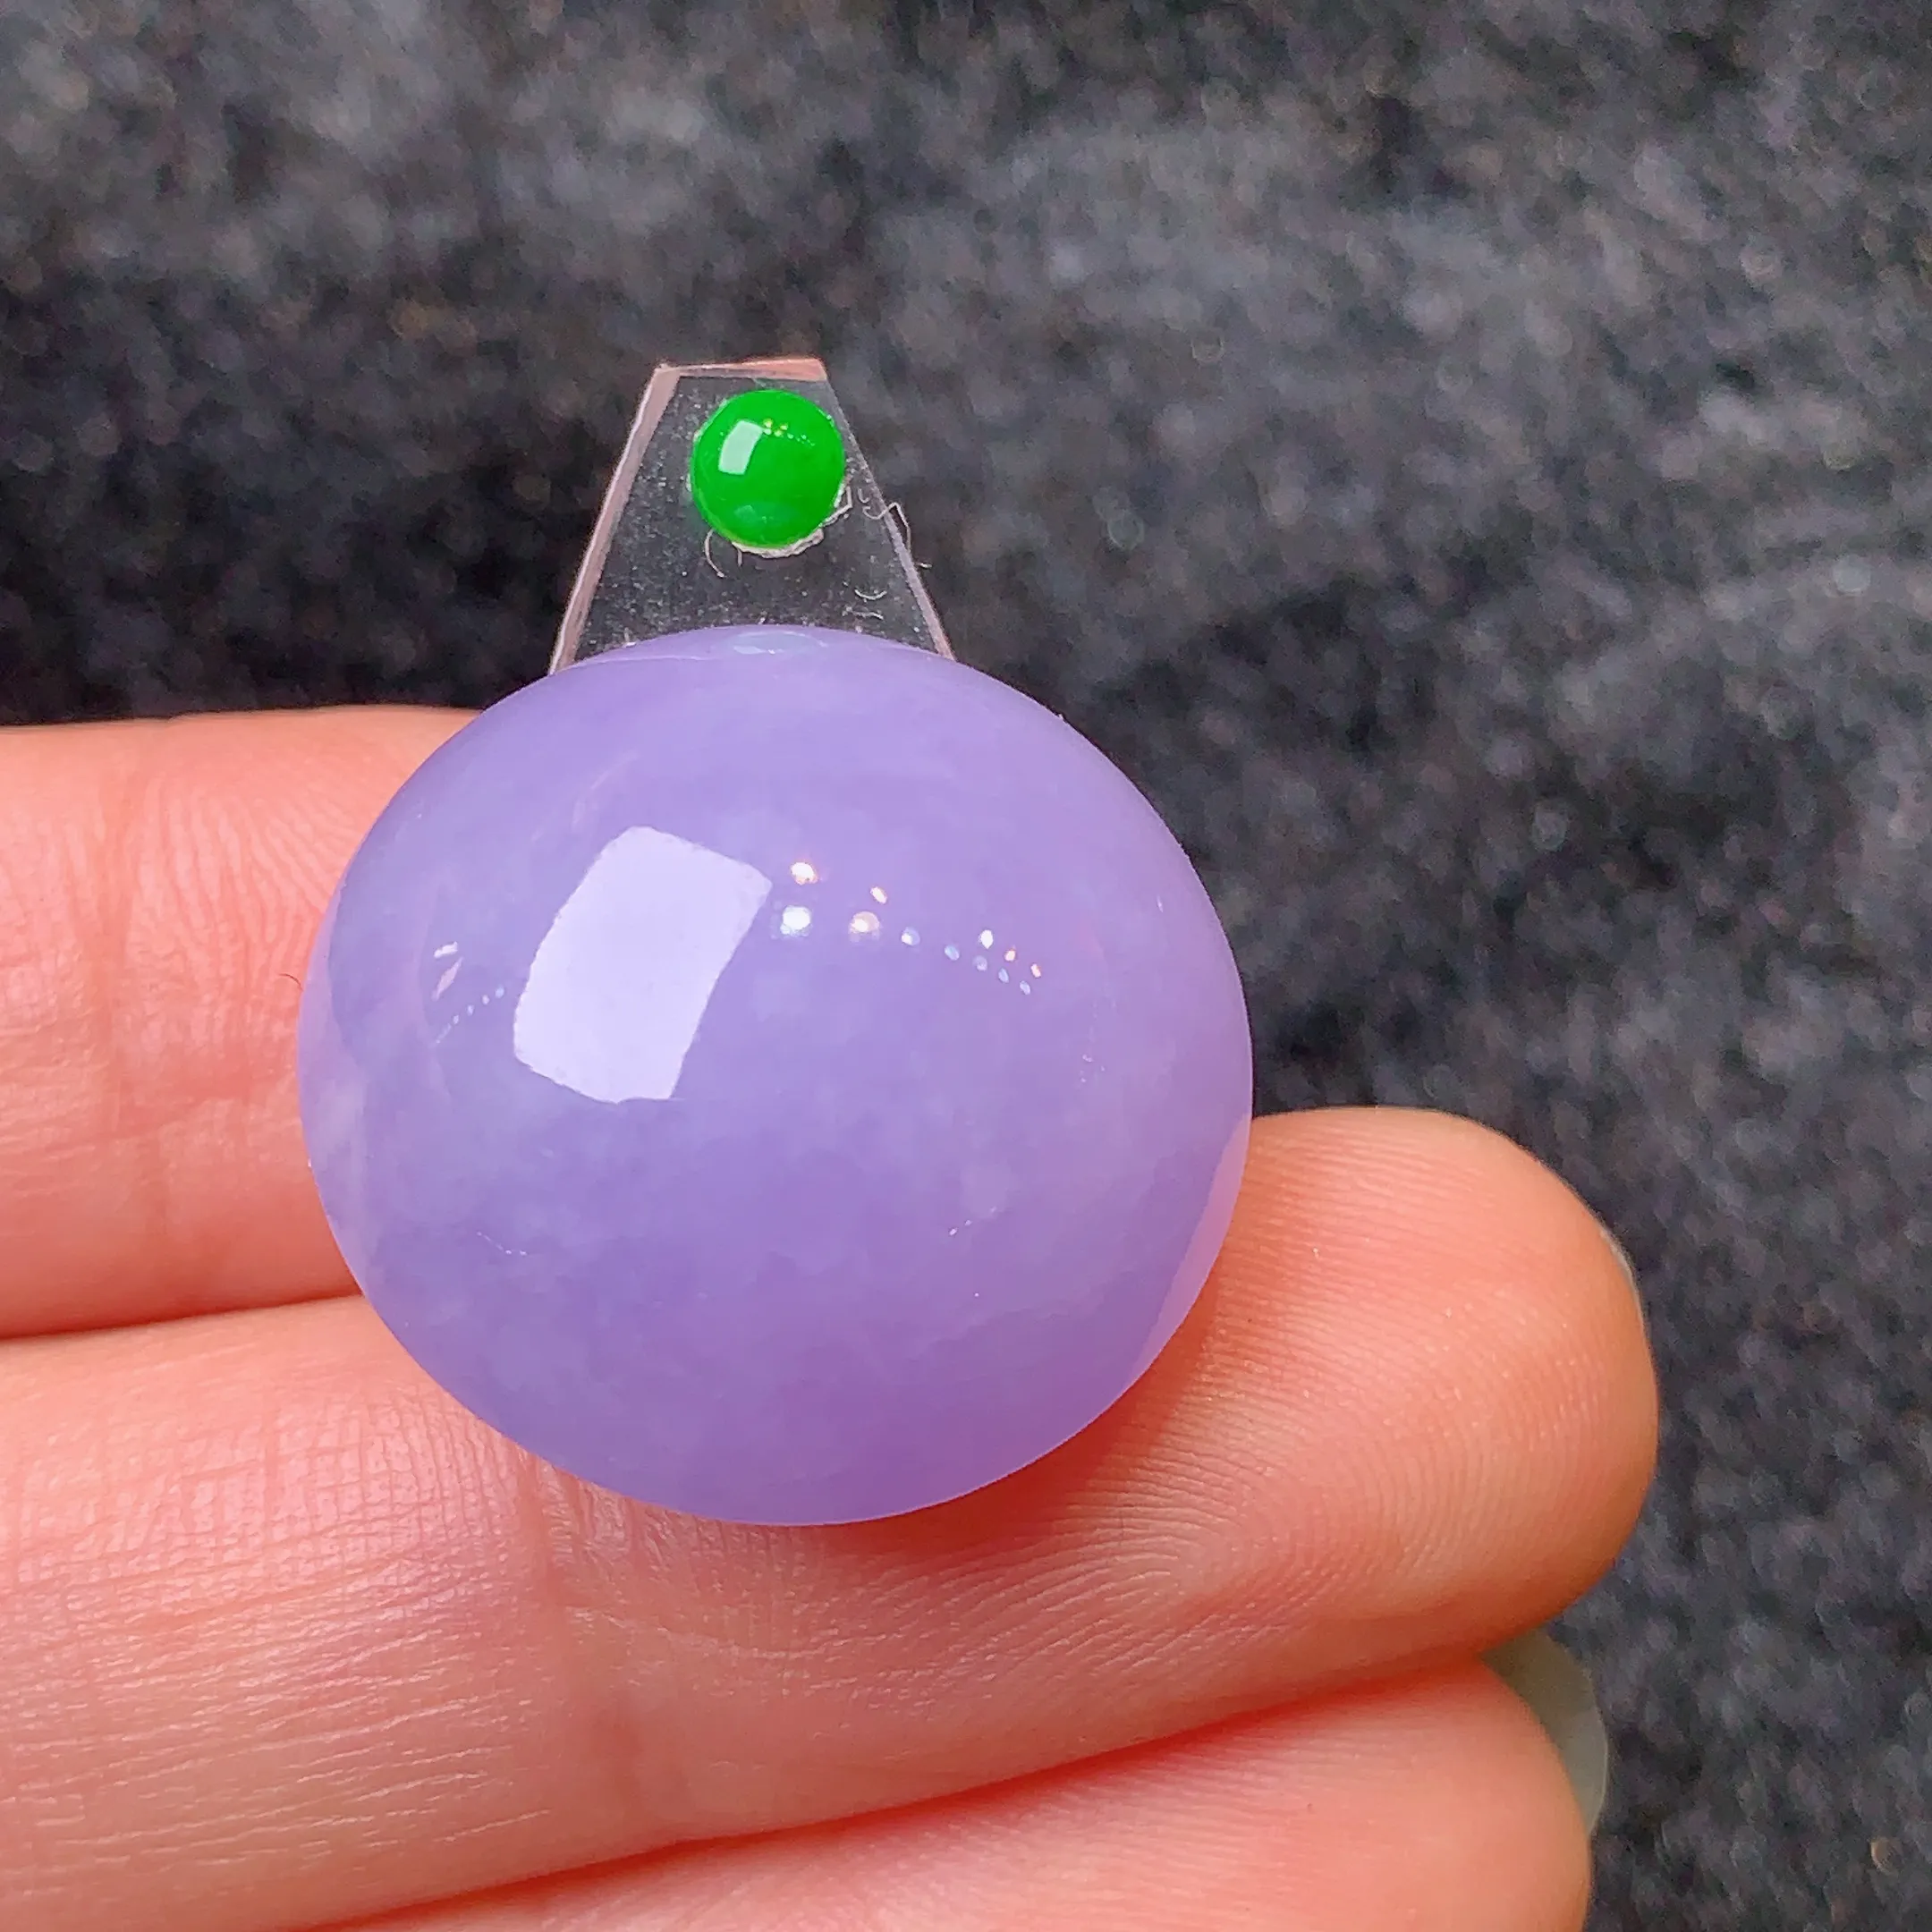 镶嵌款 紫罗兰蛋面 玉质细腻 水润透亮 色泽艳丽 搭配绿色小蛋面 整体尺寸20.2*12